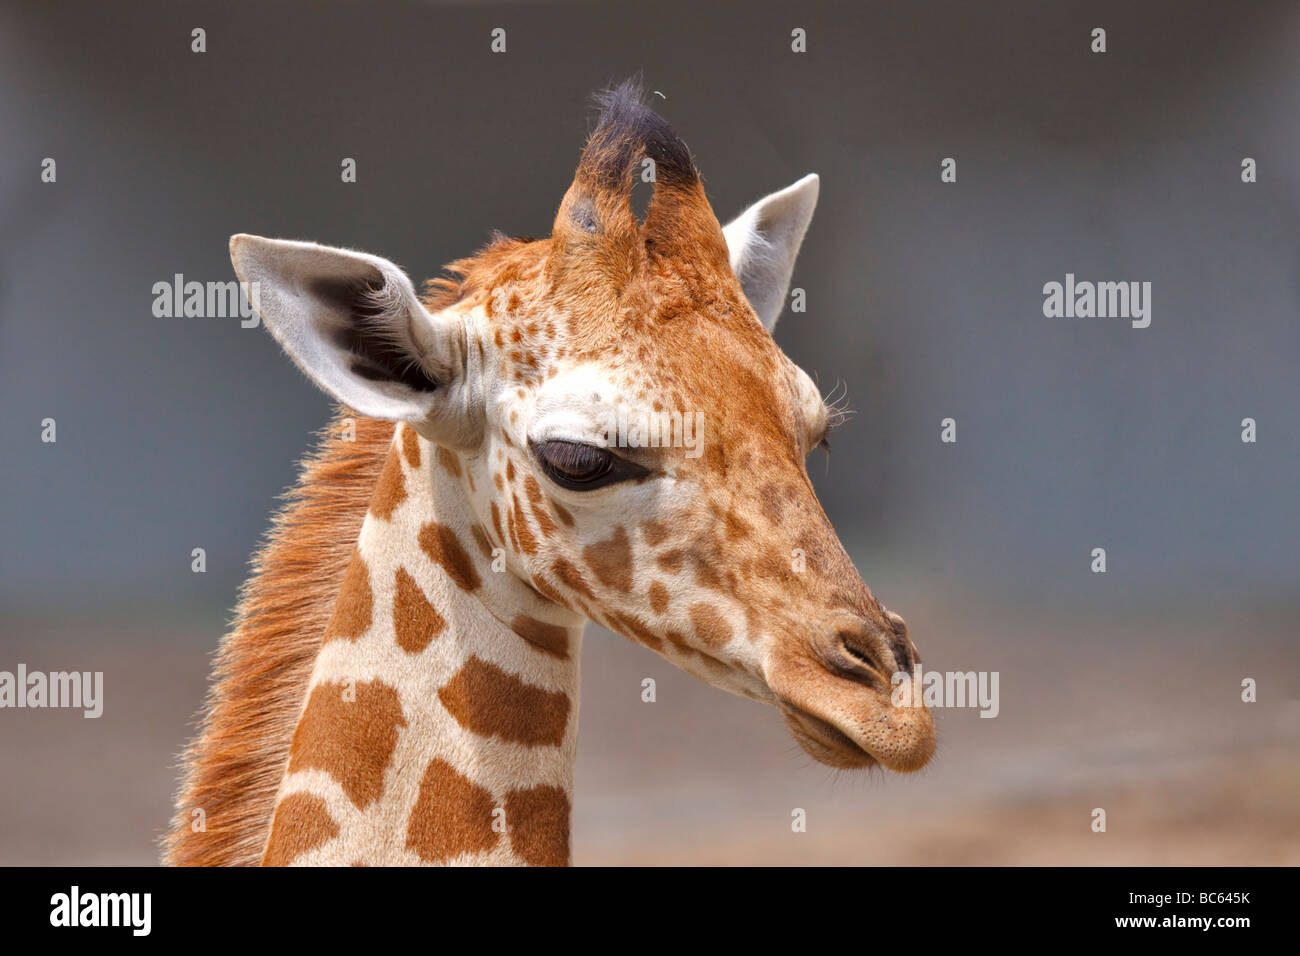 Bebé jirafas, Giraffa camelopardalis Foto de stock